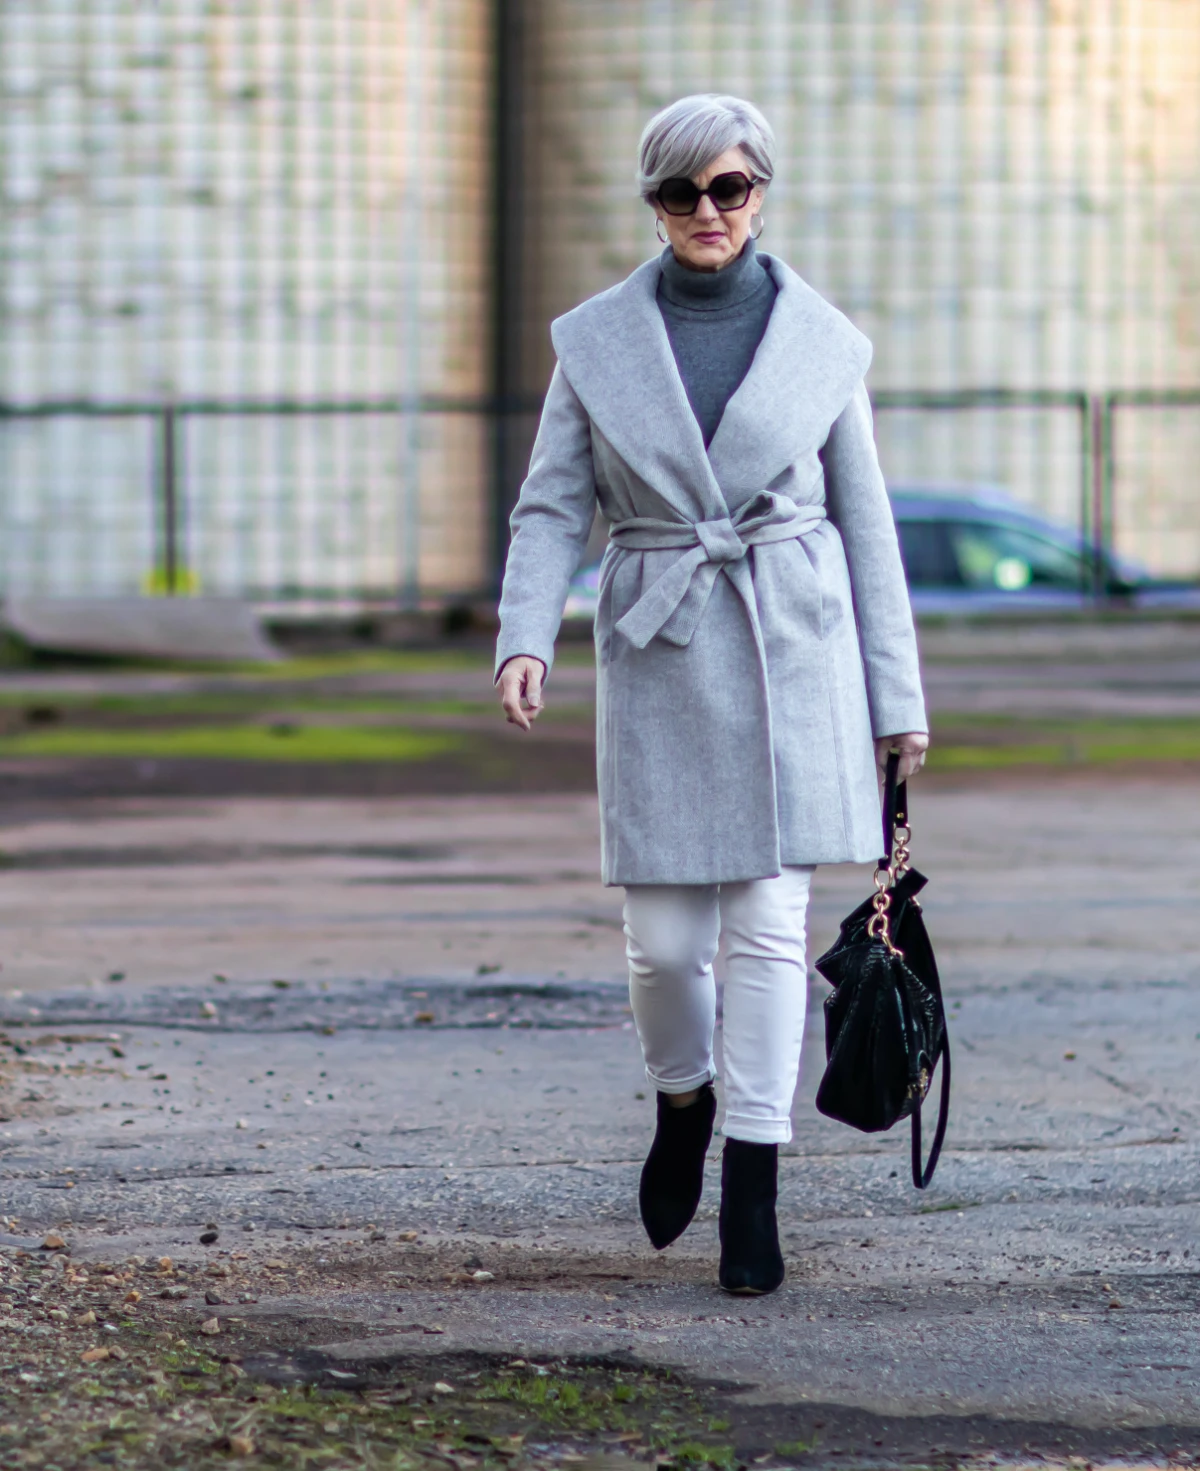 comment porter un jean blanc apres 60 ans manteau sac a main rue